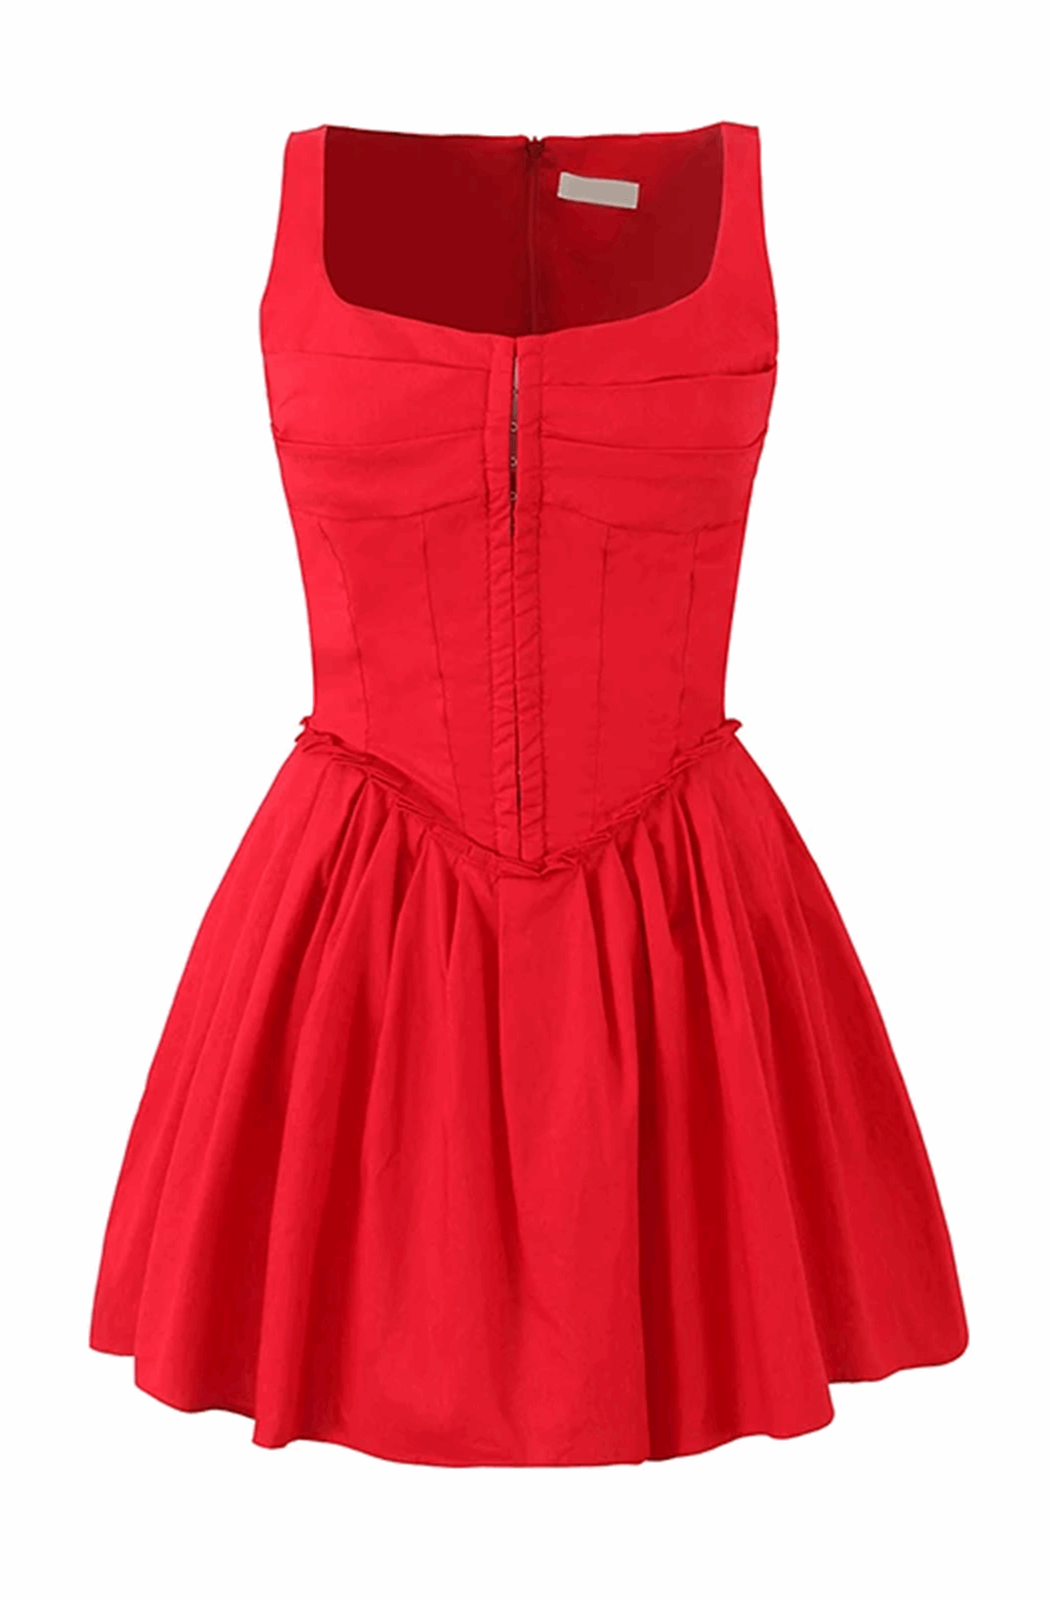 Red skater mini dress